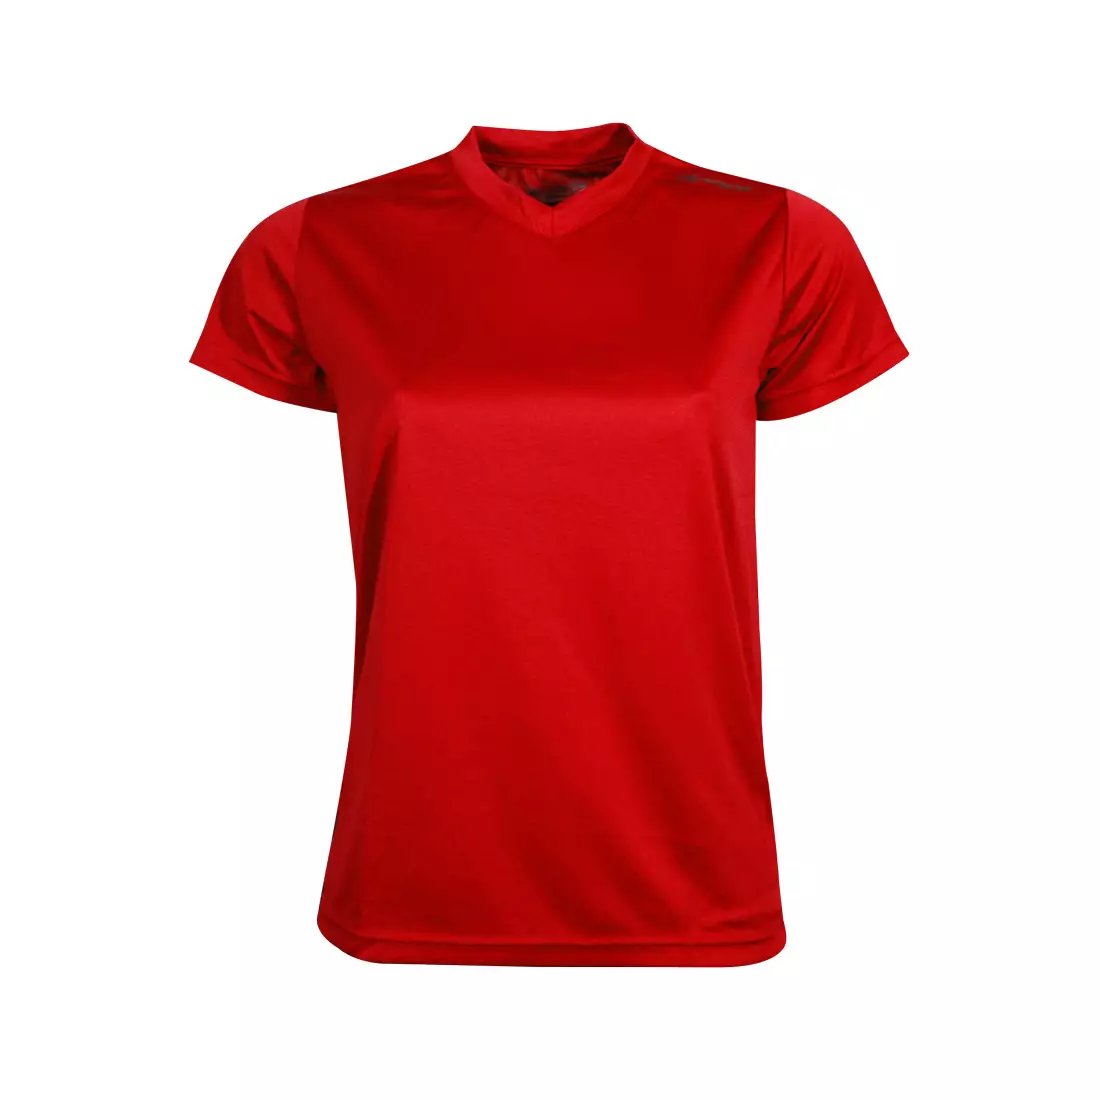 NEWLINE BASE COOL T-SHIRT - women's running T-shirt 13614-04